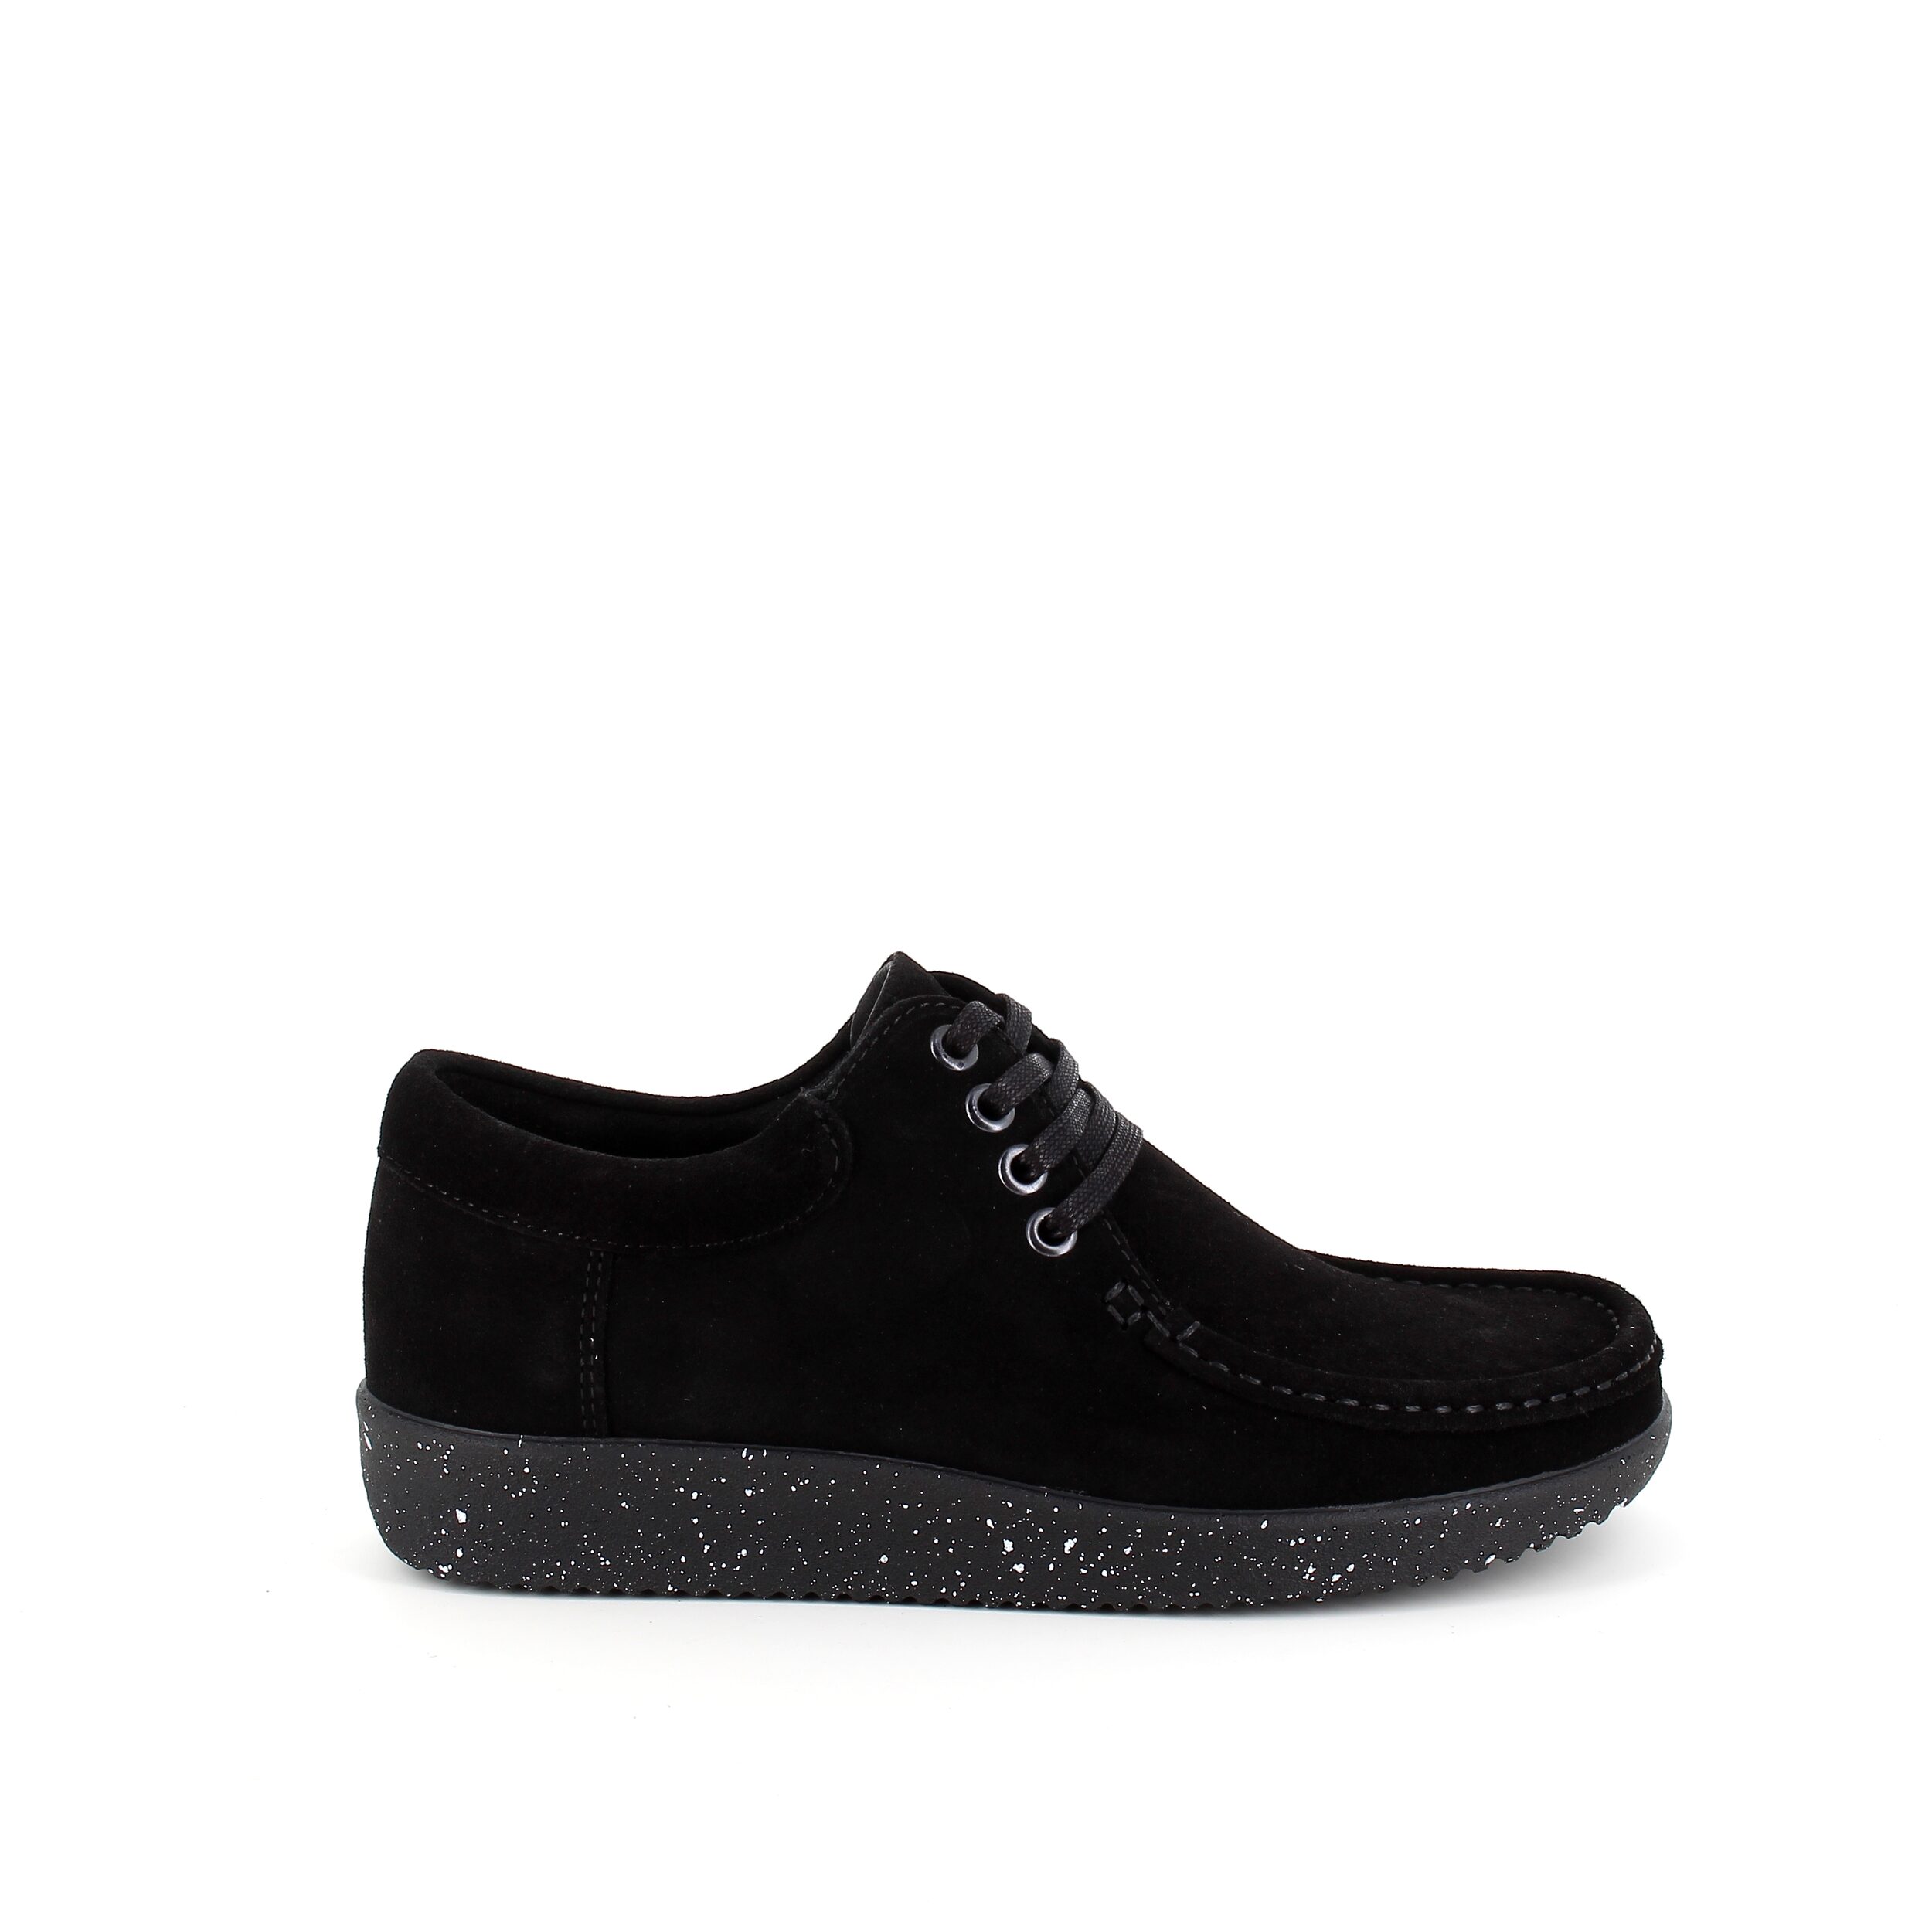 Se Nature sko i sort ruskind med hvide nister i sålen - 39 hos Sygeplejebutikken.dk